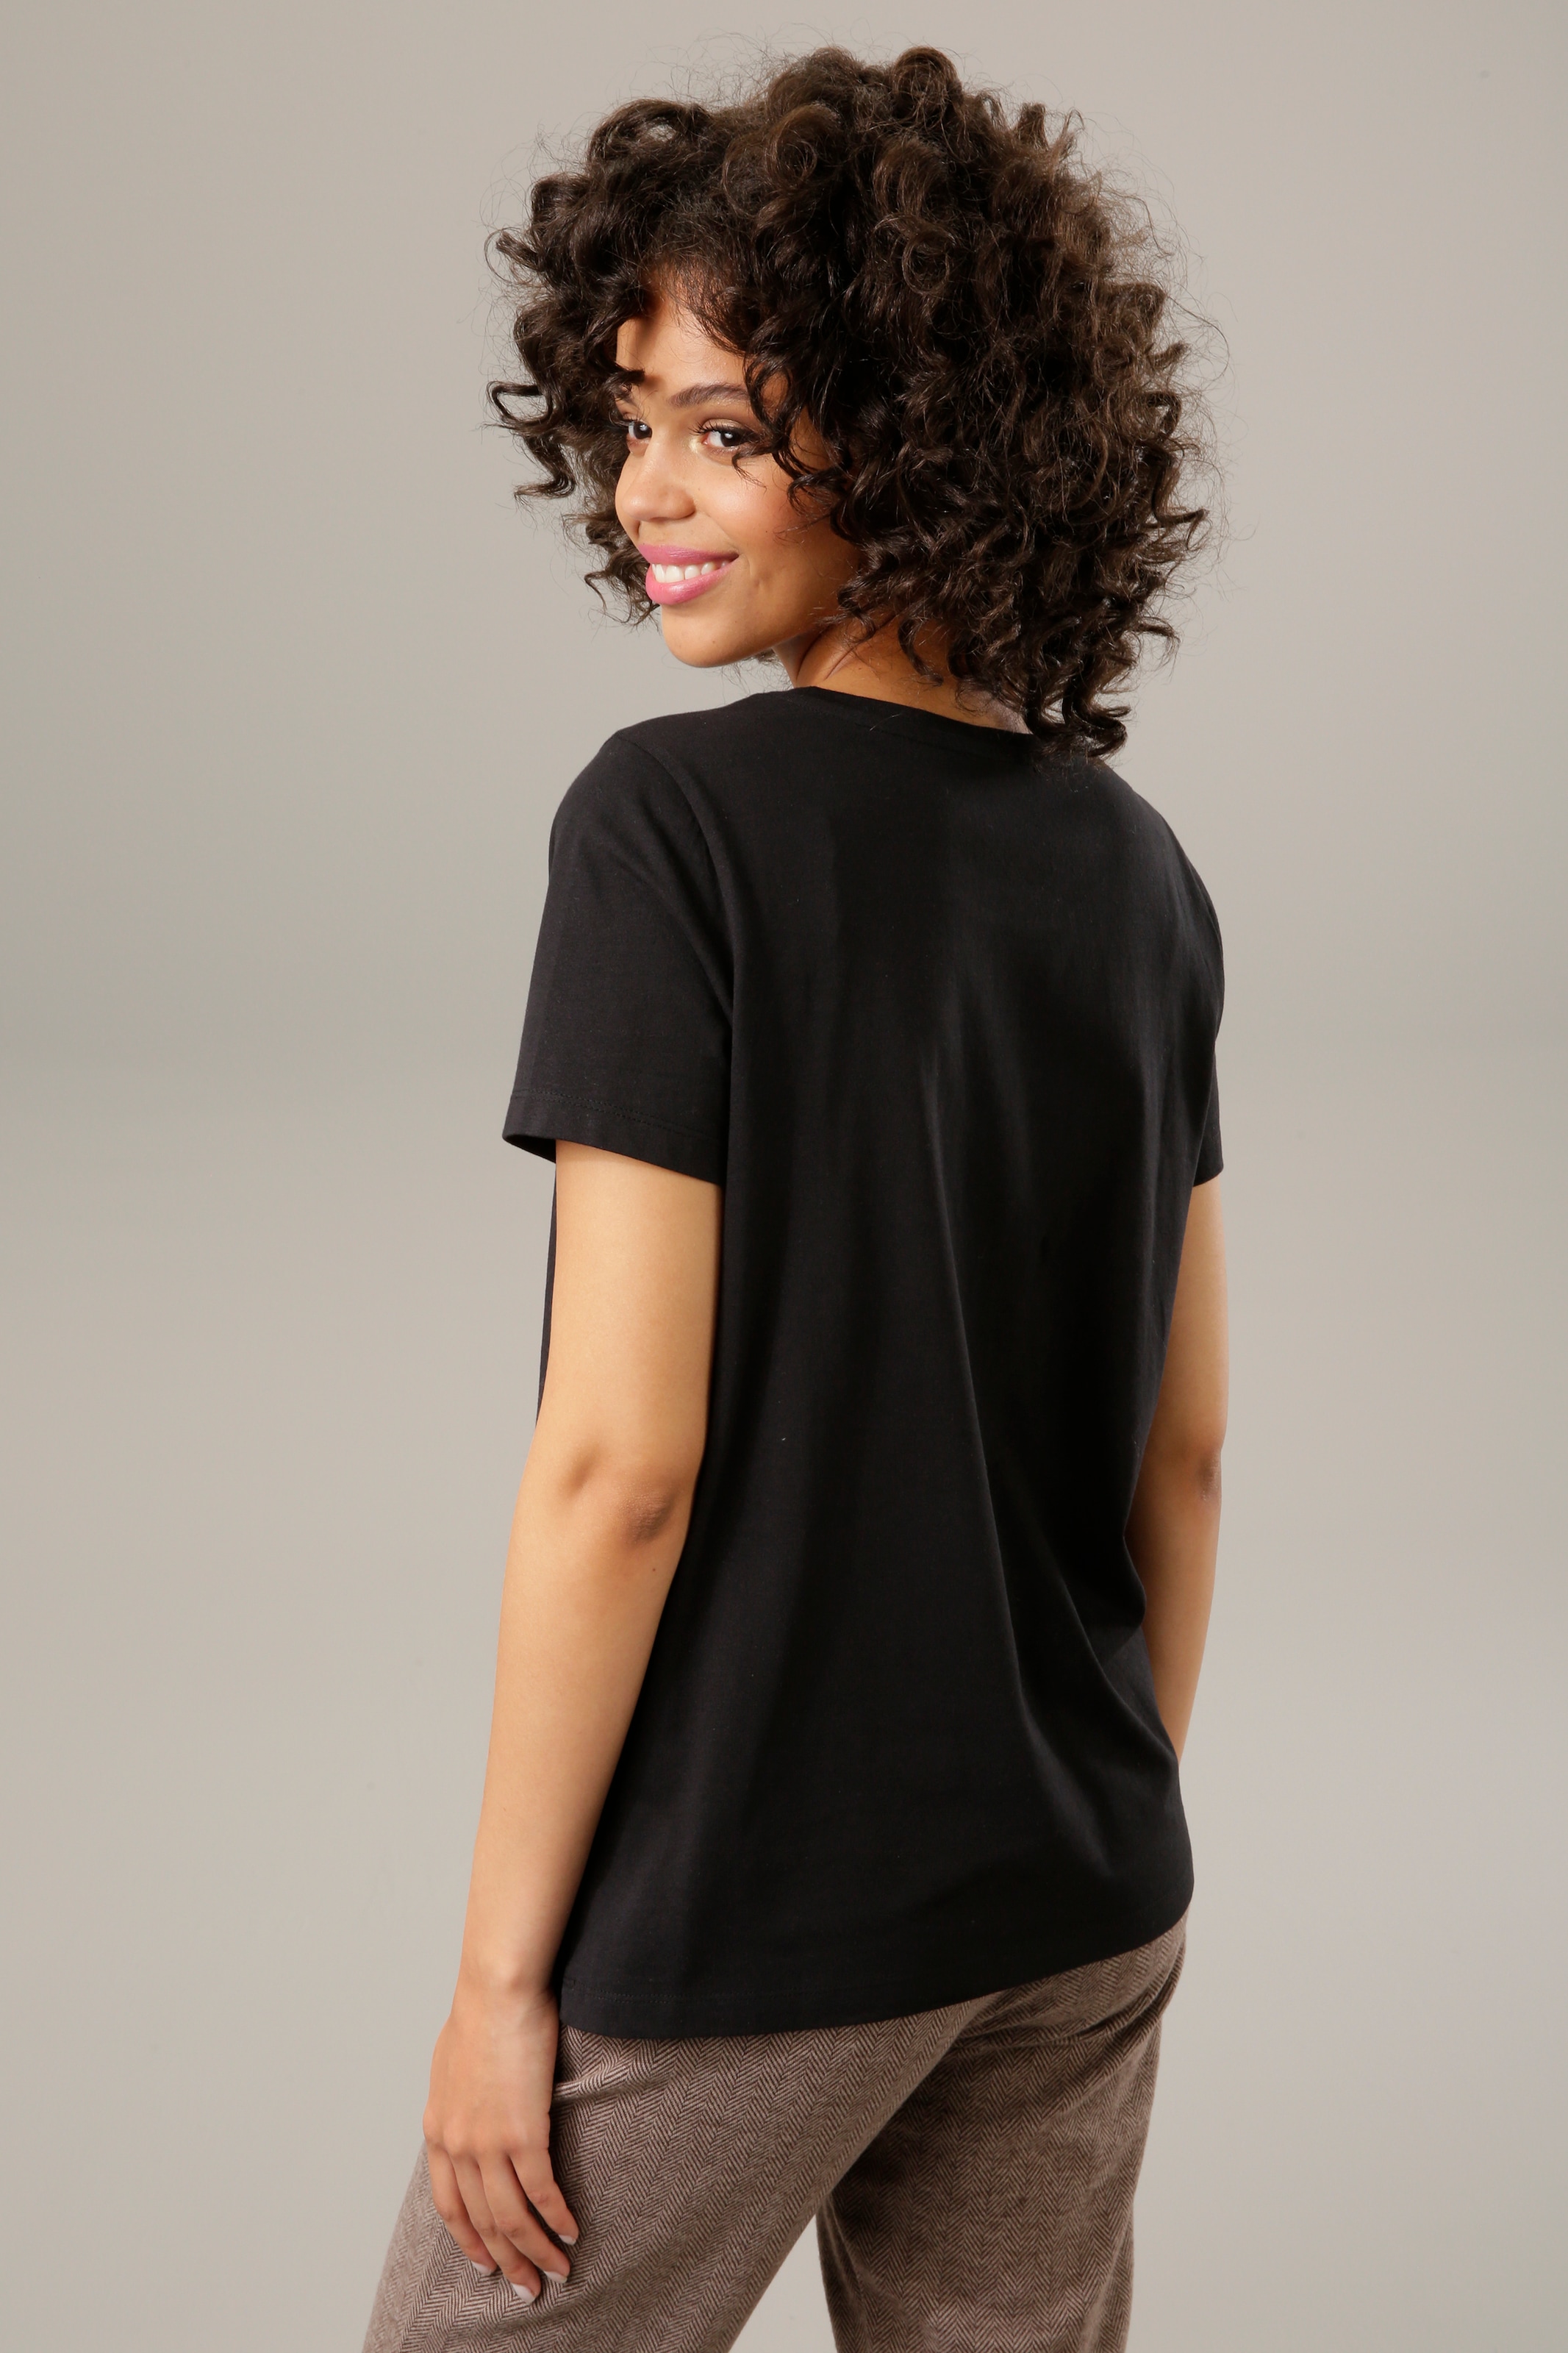 - Glanznieten bestellen NEUE T-Shirt, OTTO bei verzierter CASUAL Bärchen-Frontdruck mit Aniston KOLLEKTIOM